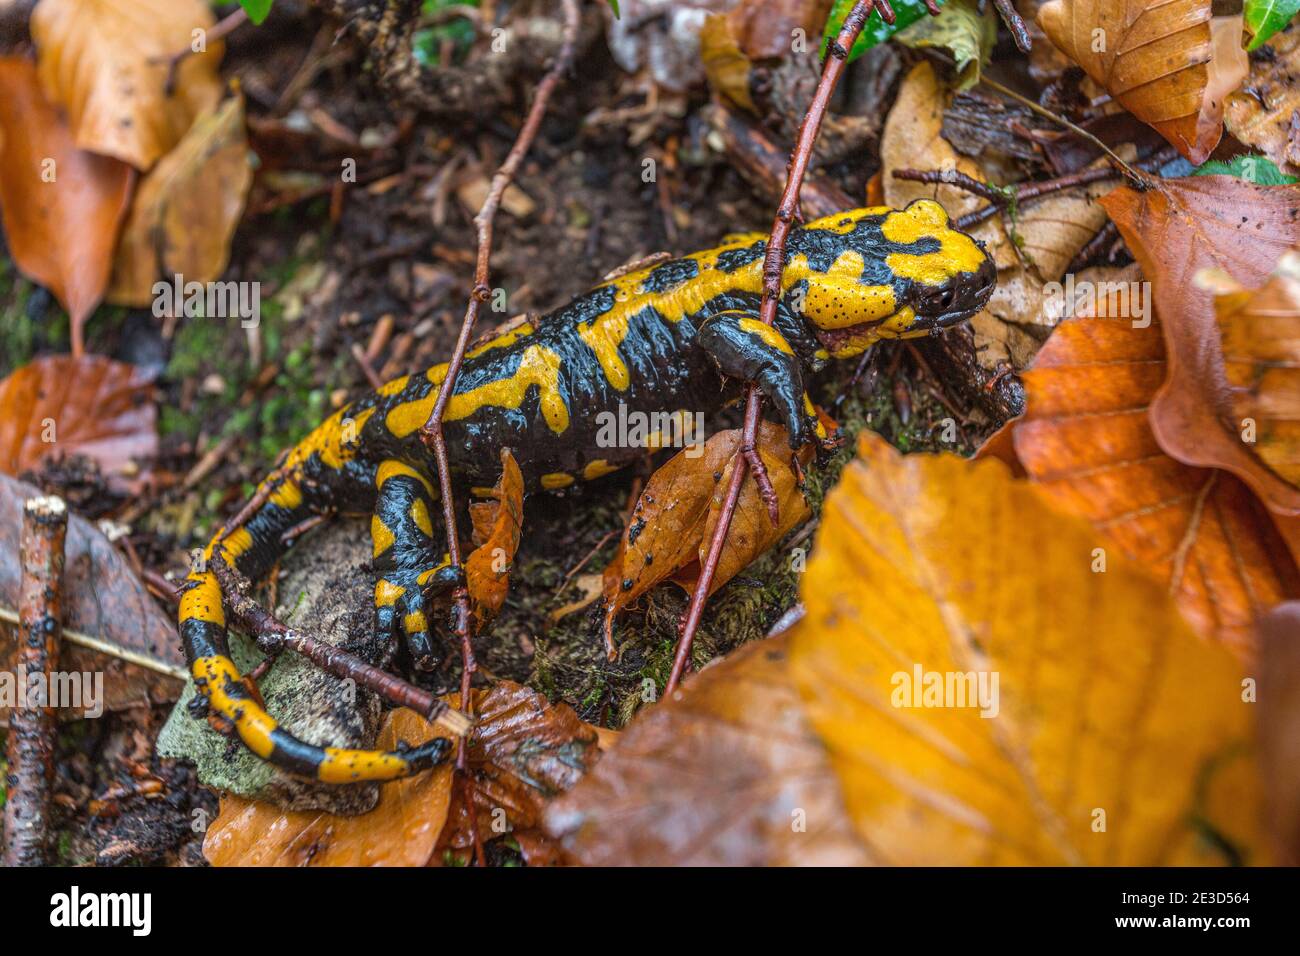 Ein gelber und schwarzer Salamander, Salamandra salamandra gigliolii, versteckt sich unter regengetränkten Blättern. Nationalpark Maiella, Abruzzen, Italien Stockfoto